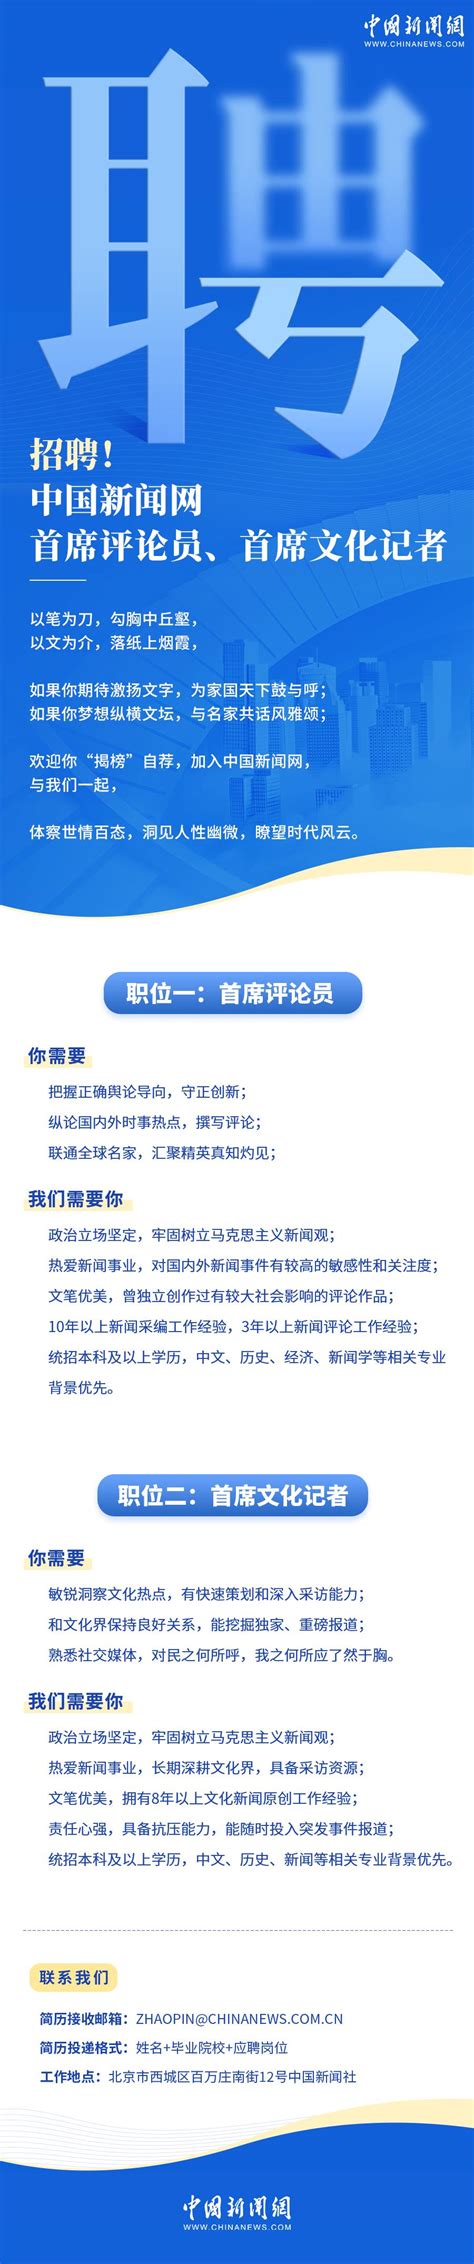 中国新闻网首席评论员、首席文化记者招聘简章-管理学院